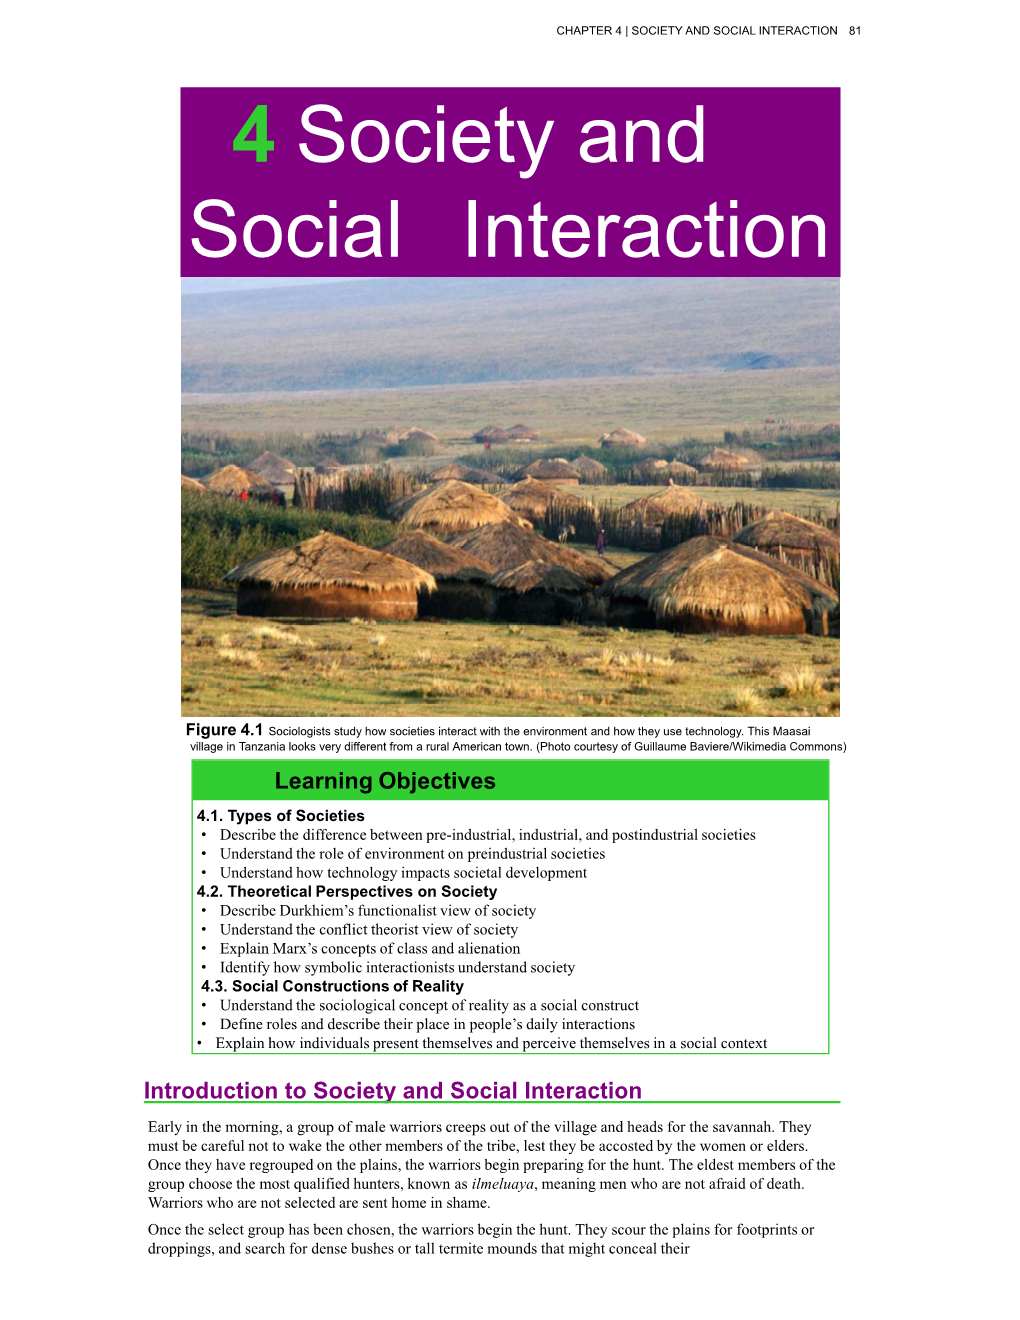 4 Society and Social Interaction